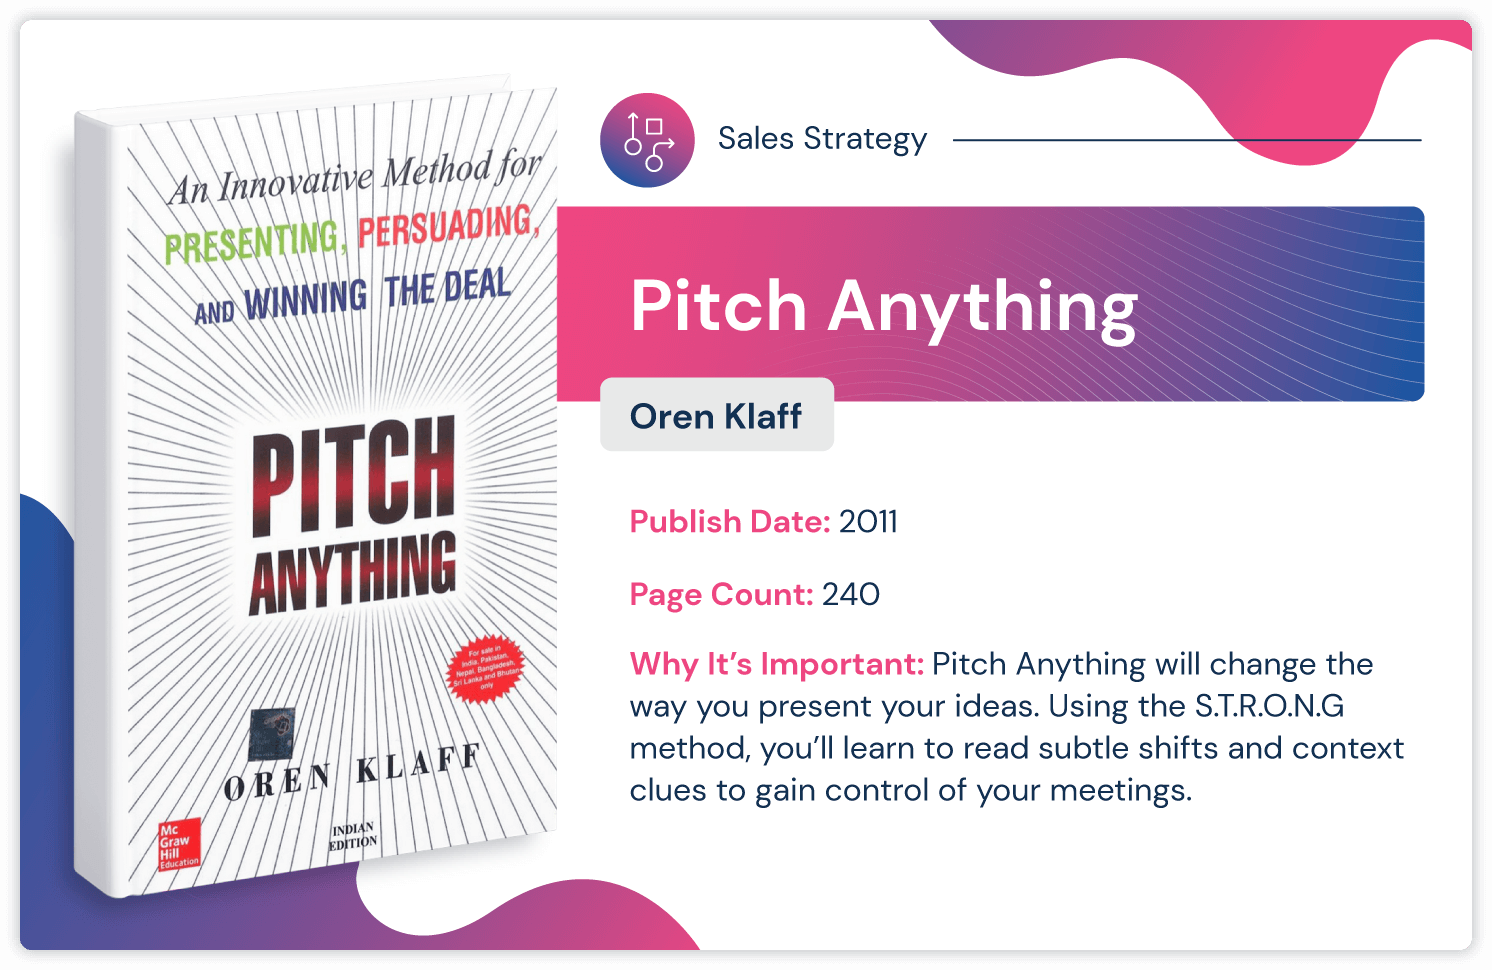 Libro de estrategia de ventas "Pitch Anything" de Oren Klaff, publicado en 2011 y de 240 páginas.